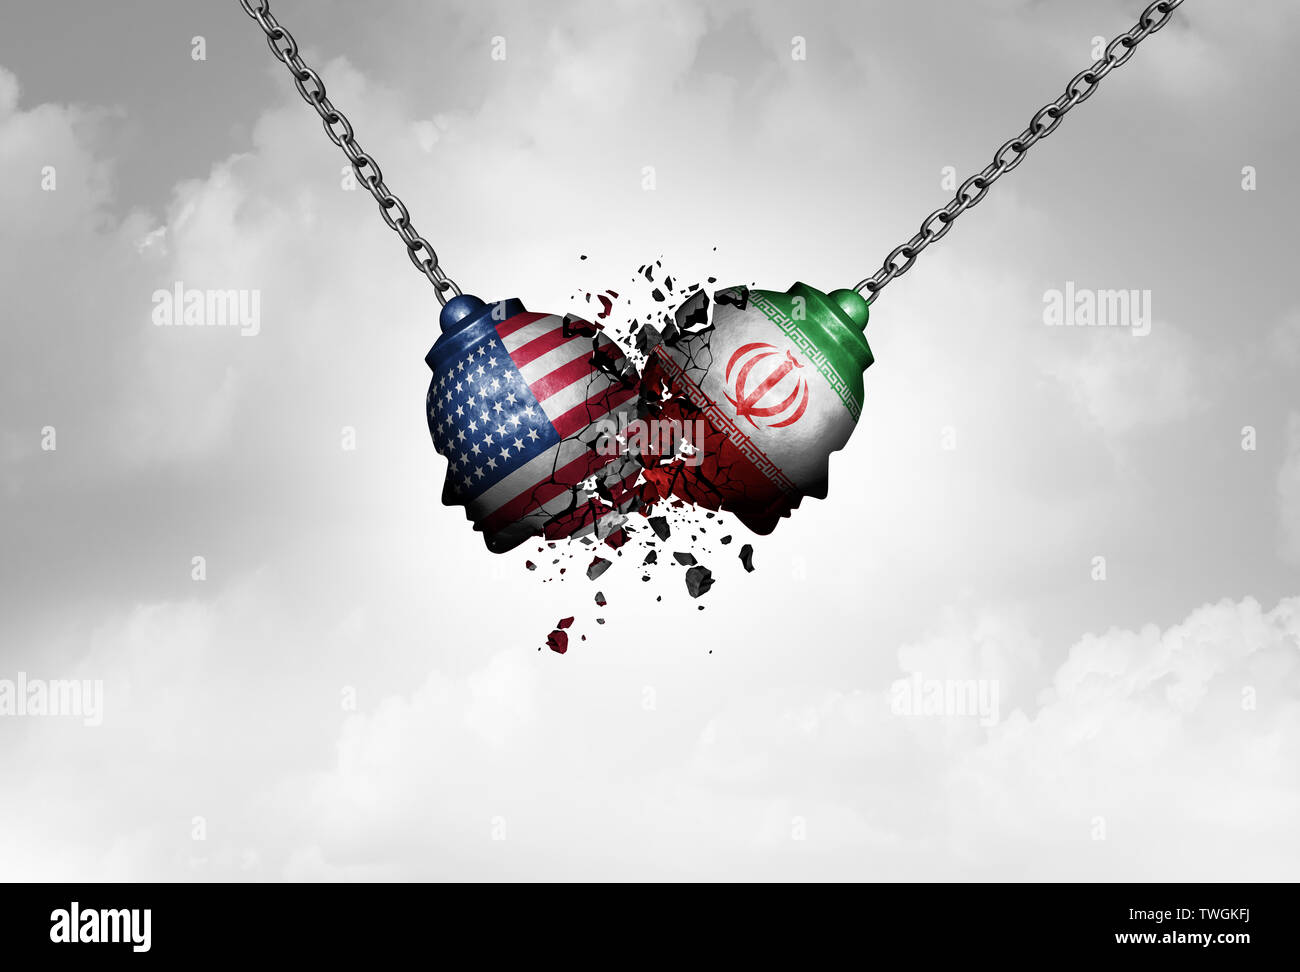 Ci iran medio oriente scontro come USA o Stati Uniti crisi nel Golfo Persico nozione come un americano e iraniani di problema di sicurezza. Foto Stock